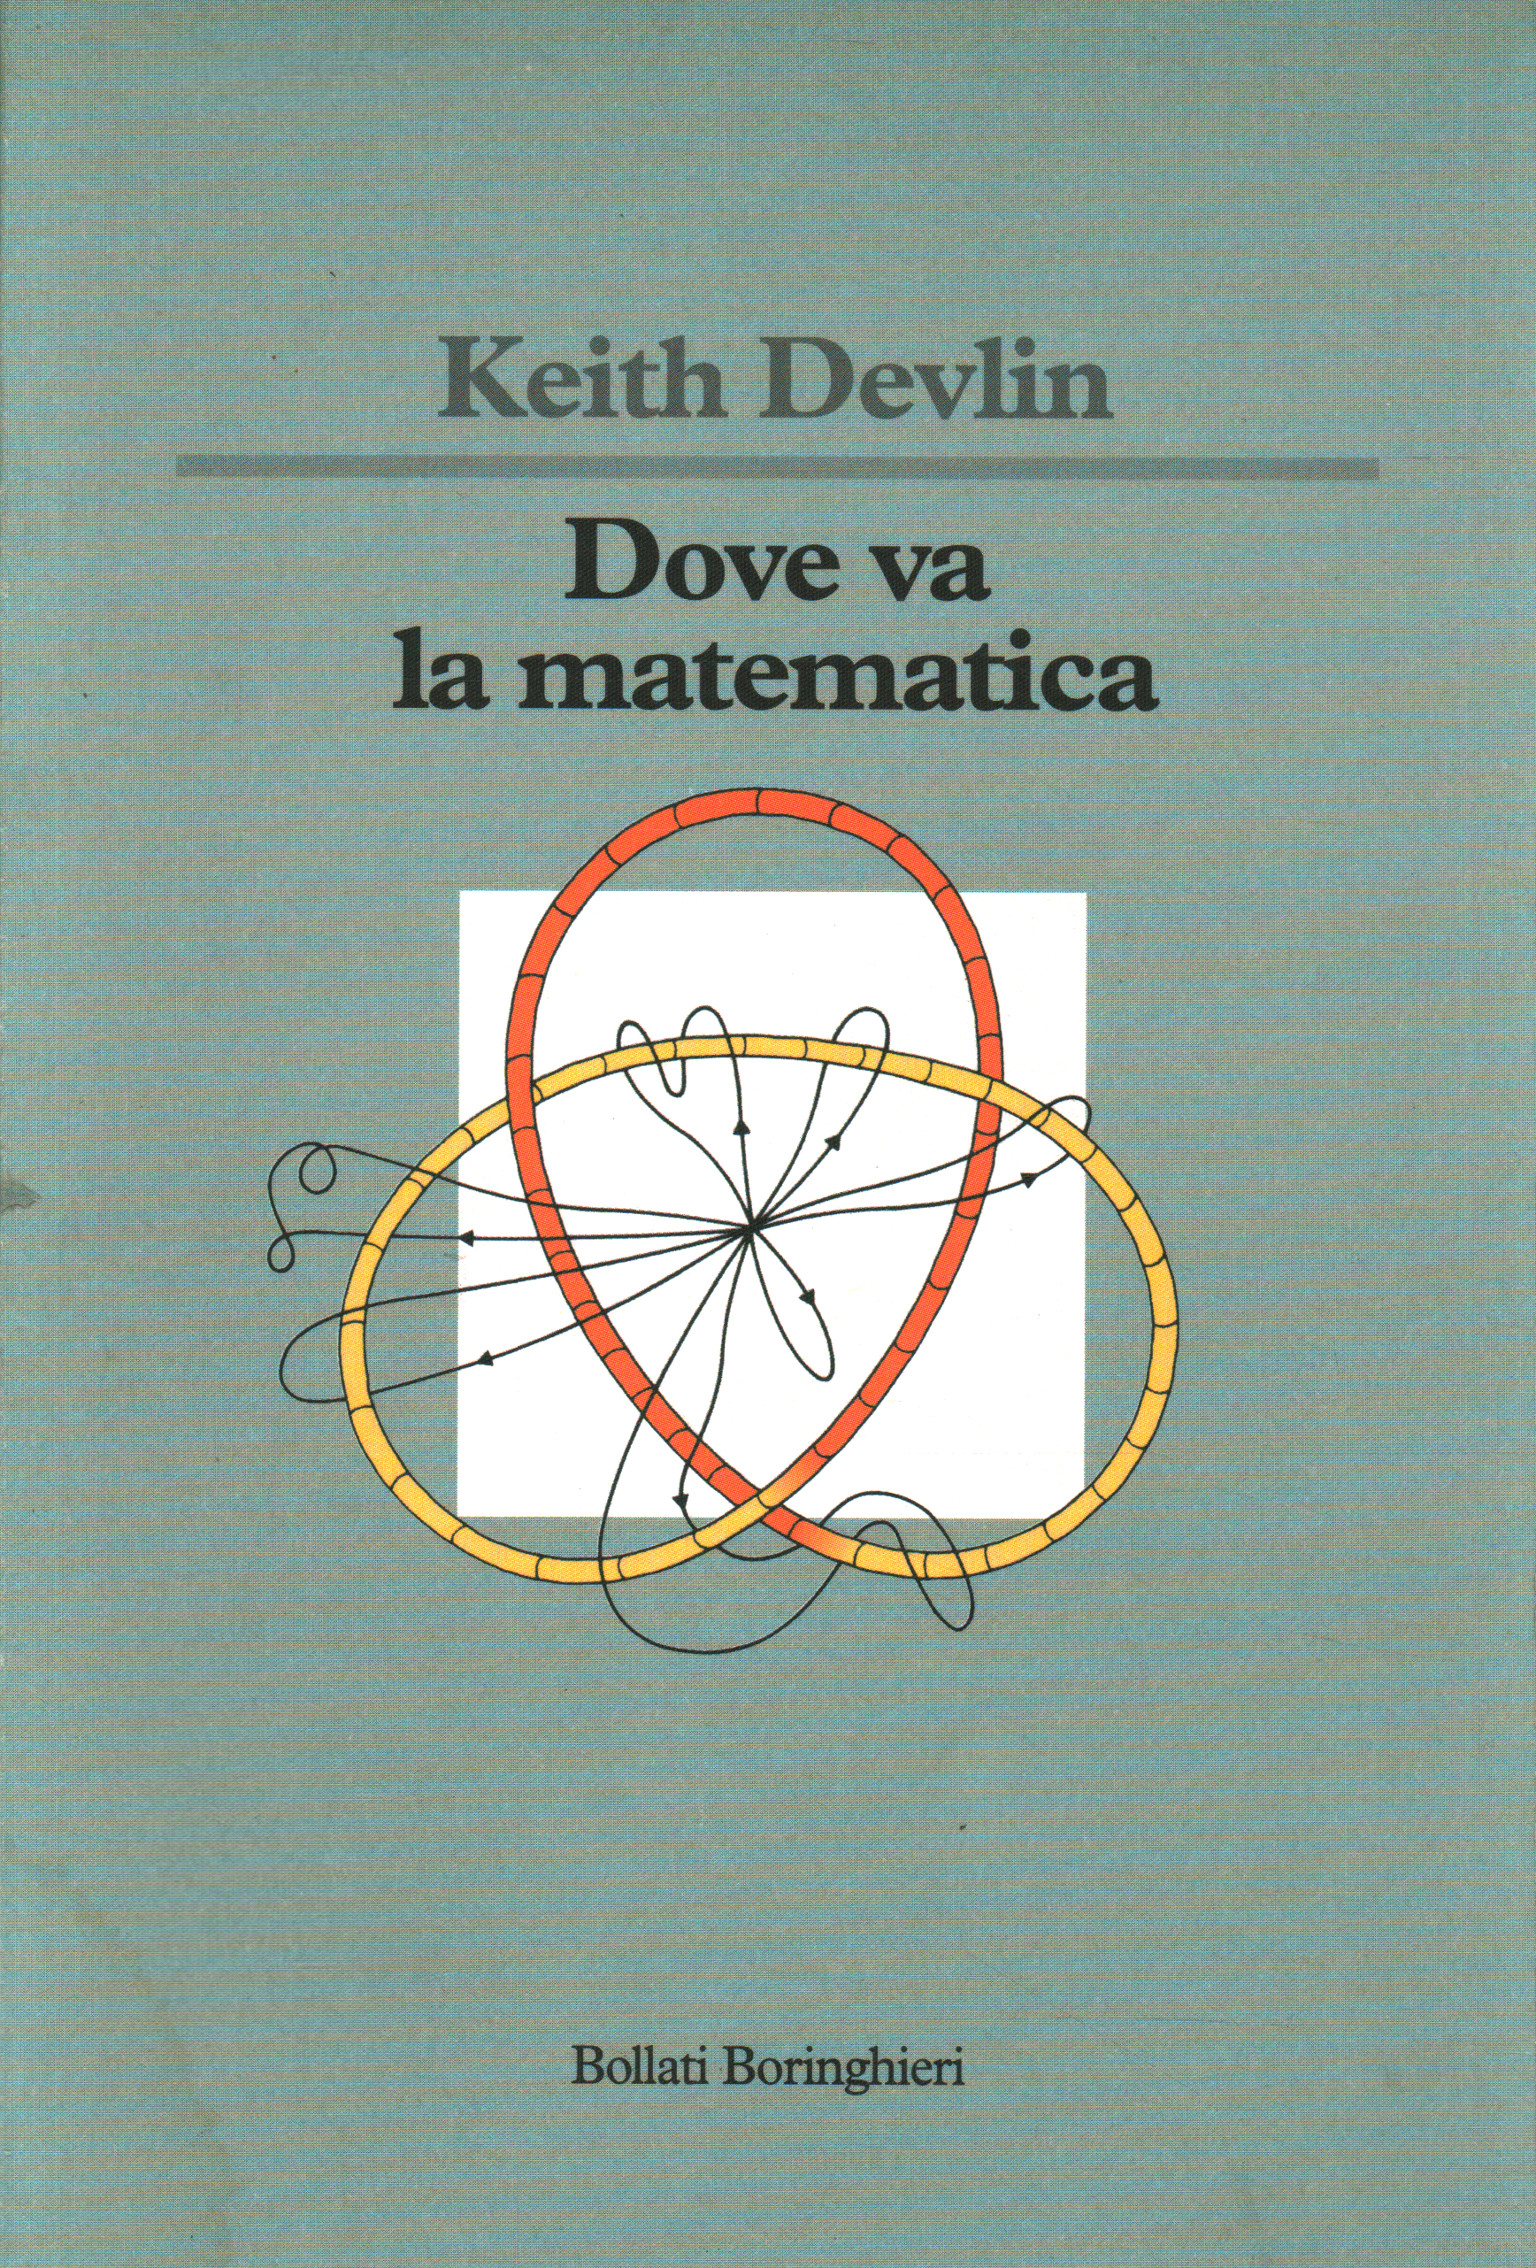 Dove va la matematica, Keith Devlin